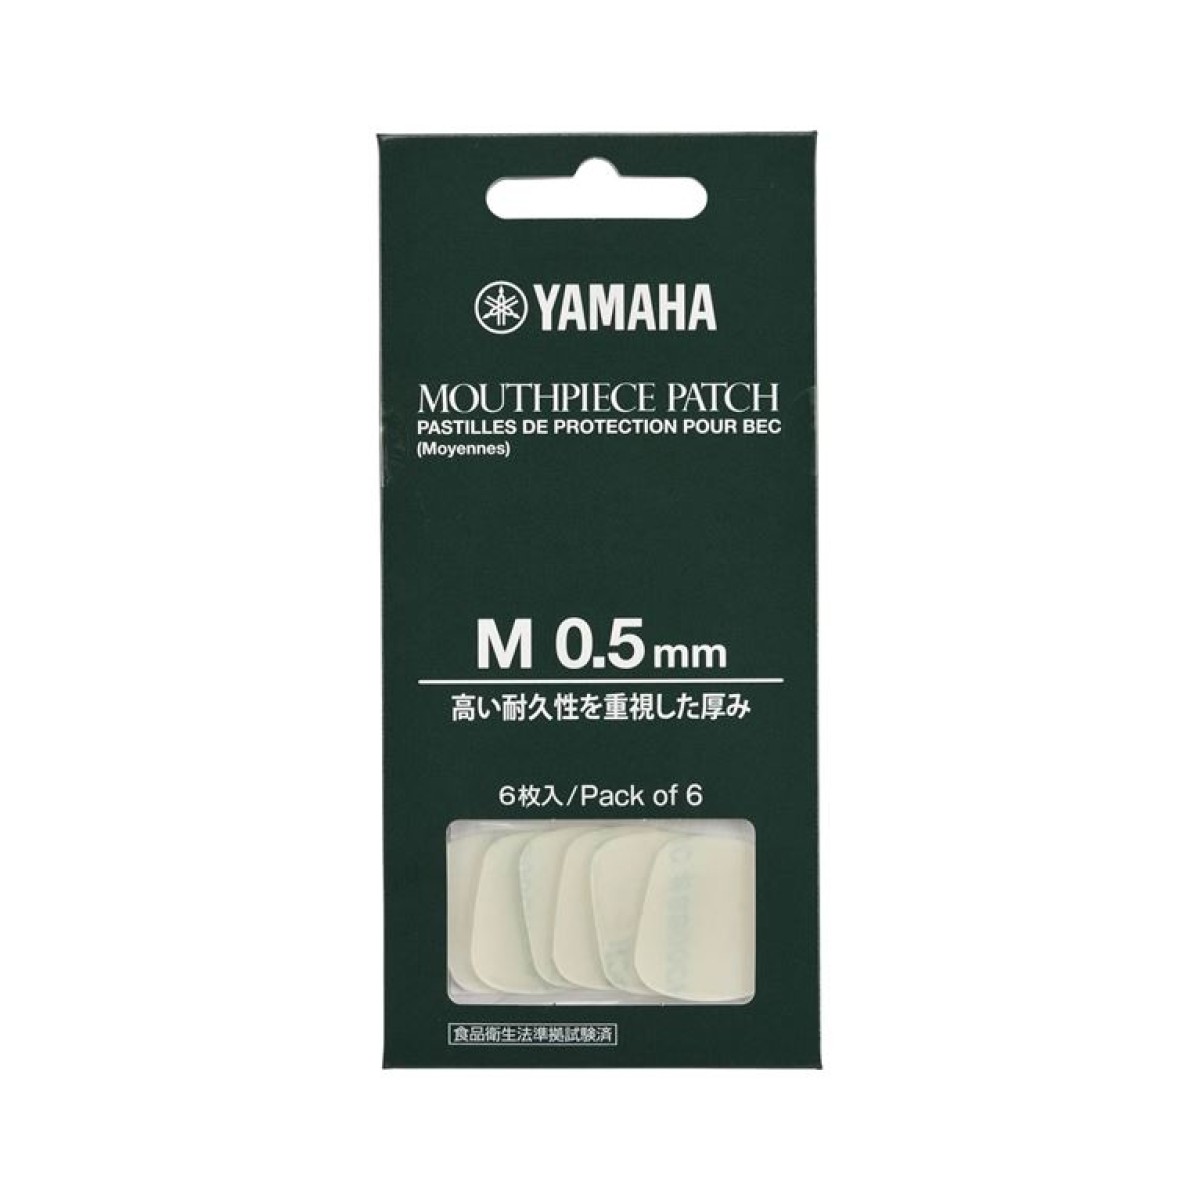 YAMAHA Mouthpiece Patch Medium 0.5mm